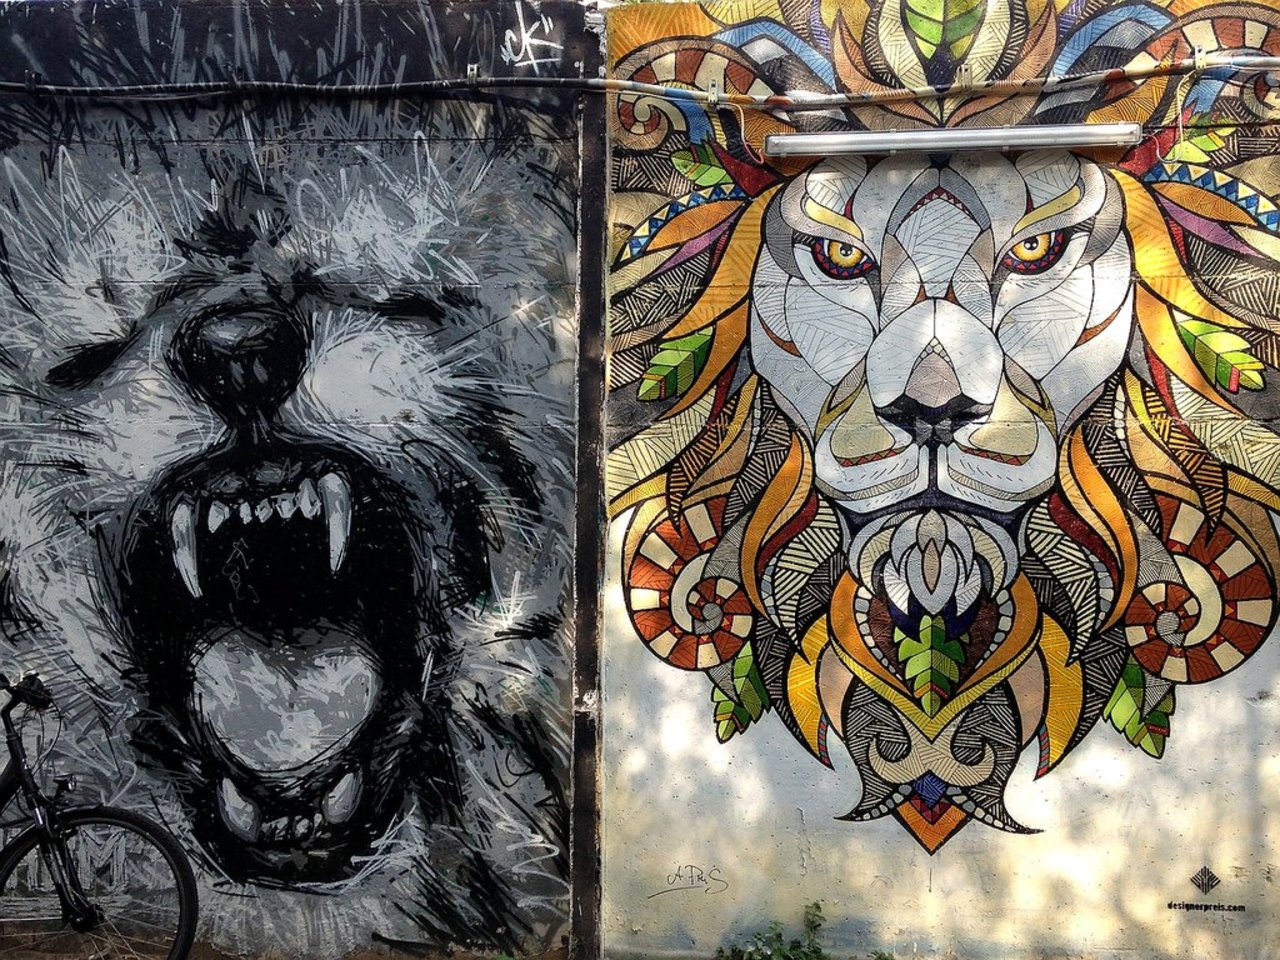 Street Art by Andreas Preis in #Berlin http://www.urbacolors.com #art #mural #graffiti #streetart https://t.co/3S0jn5iKsw